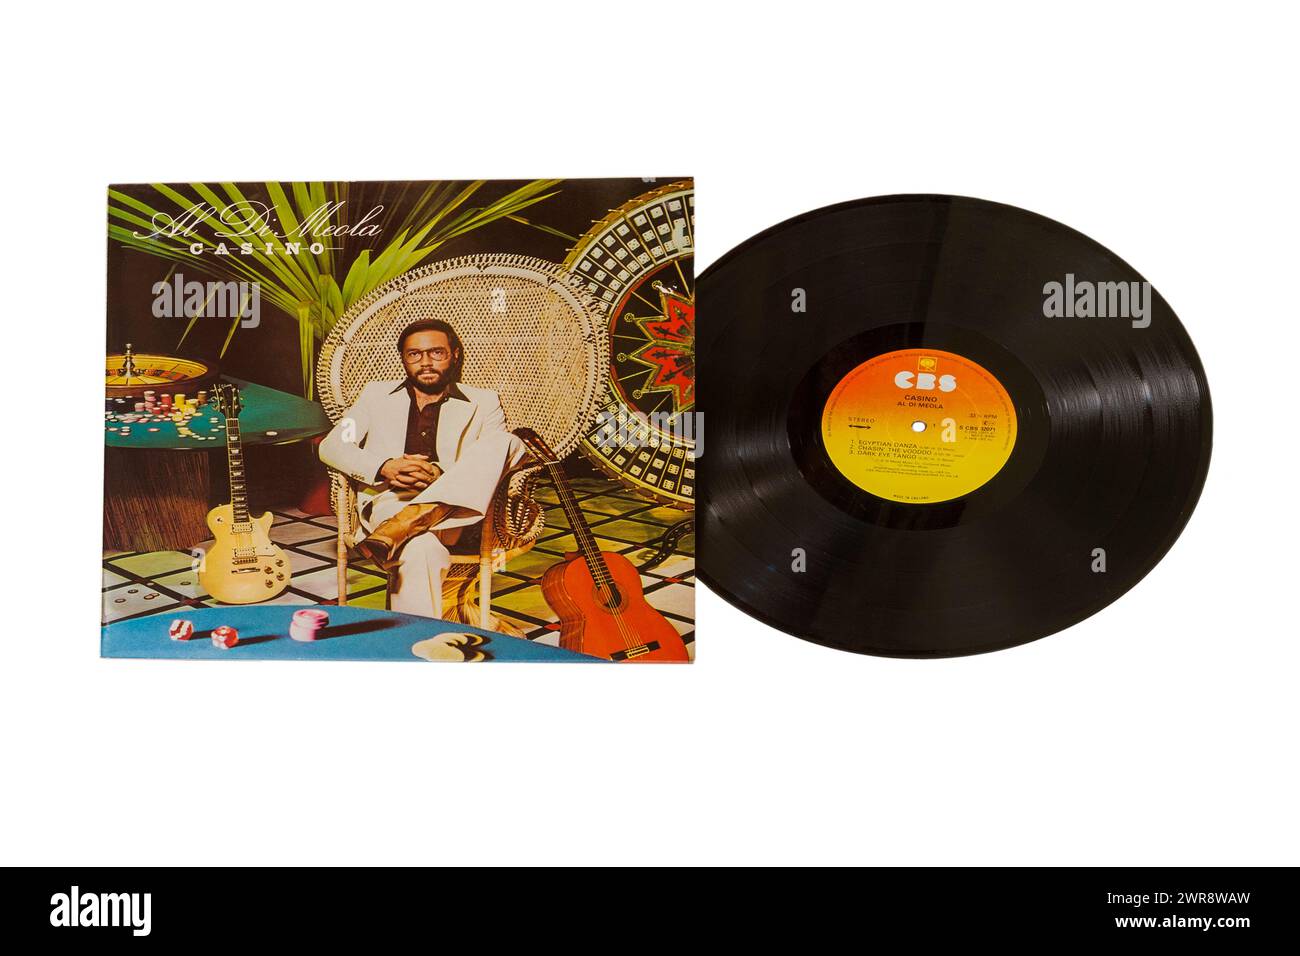 Al Di Meola Casino vinyl record album LP cover isolated on white background - 1978 Stock Photo